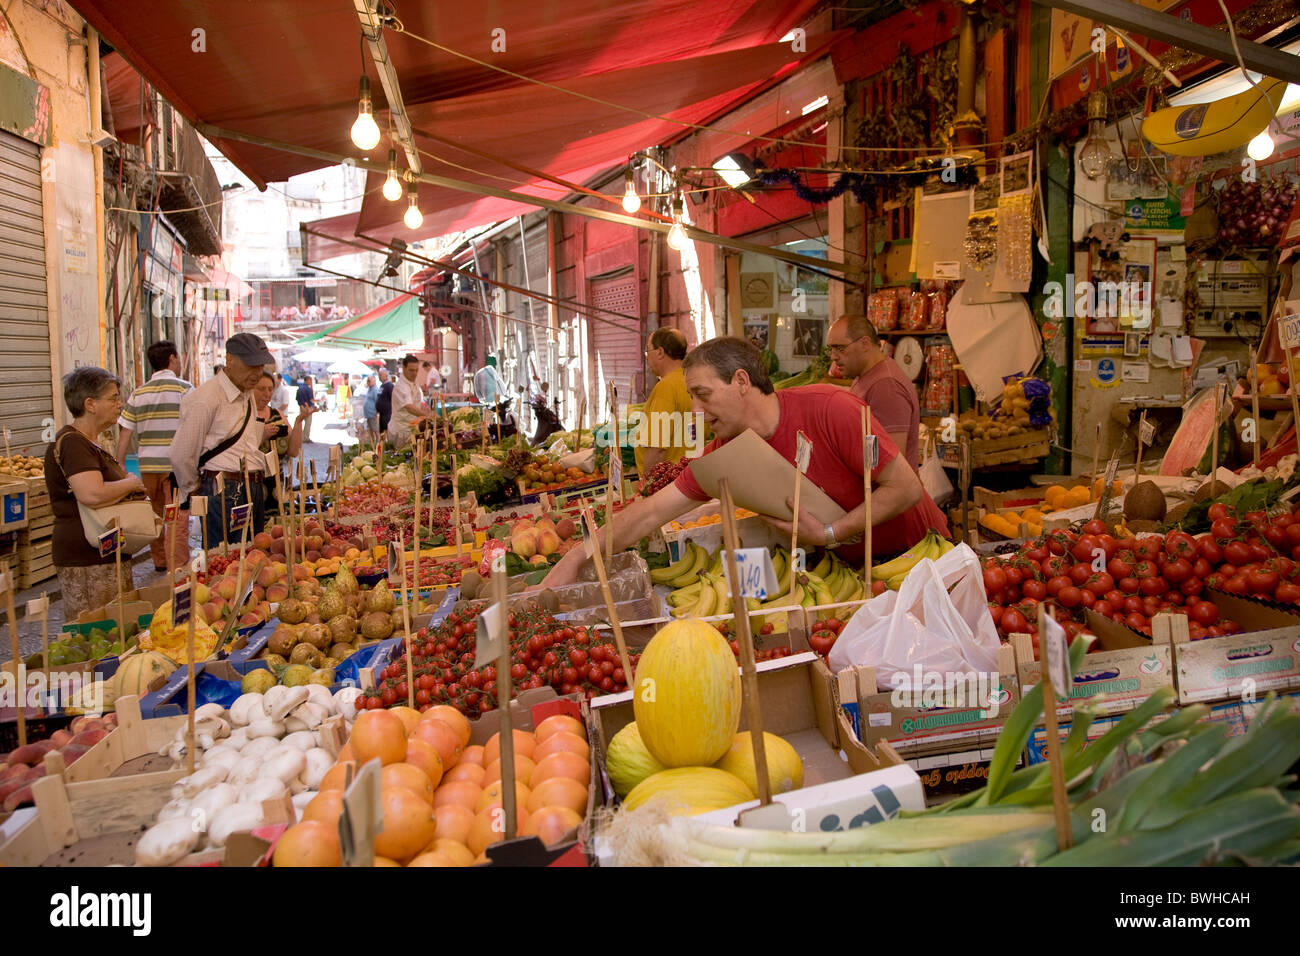 Mercato Vuccir'a mercato alimentare, frutta stand, Palermo, Sicilia, Italia, Europa Foto Stock